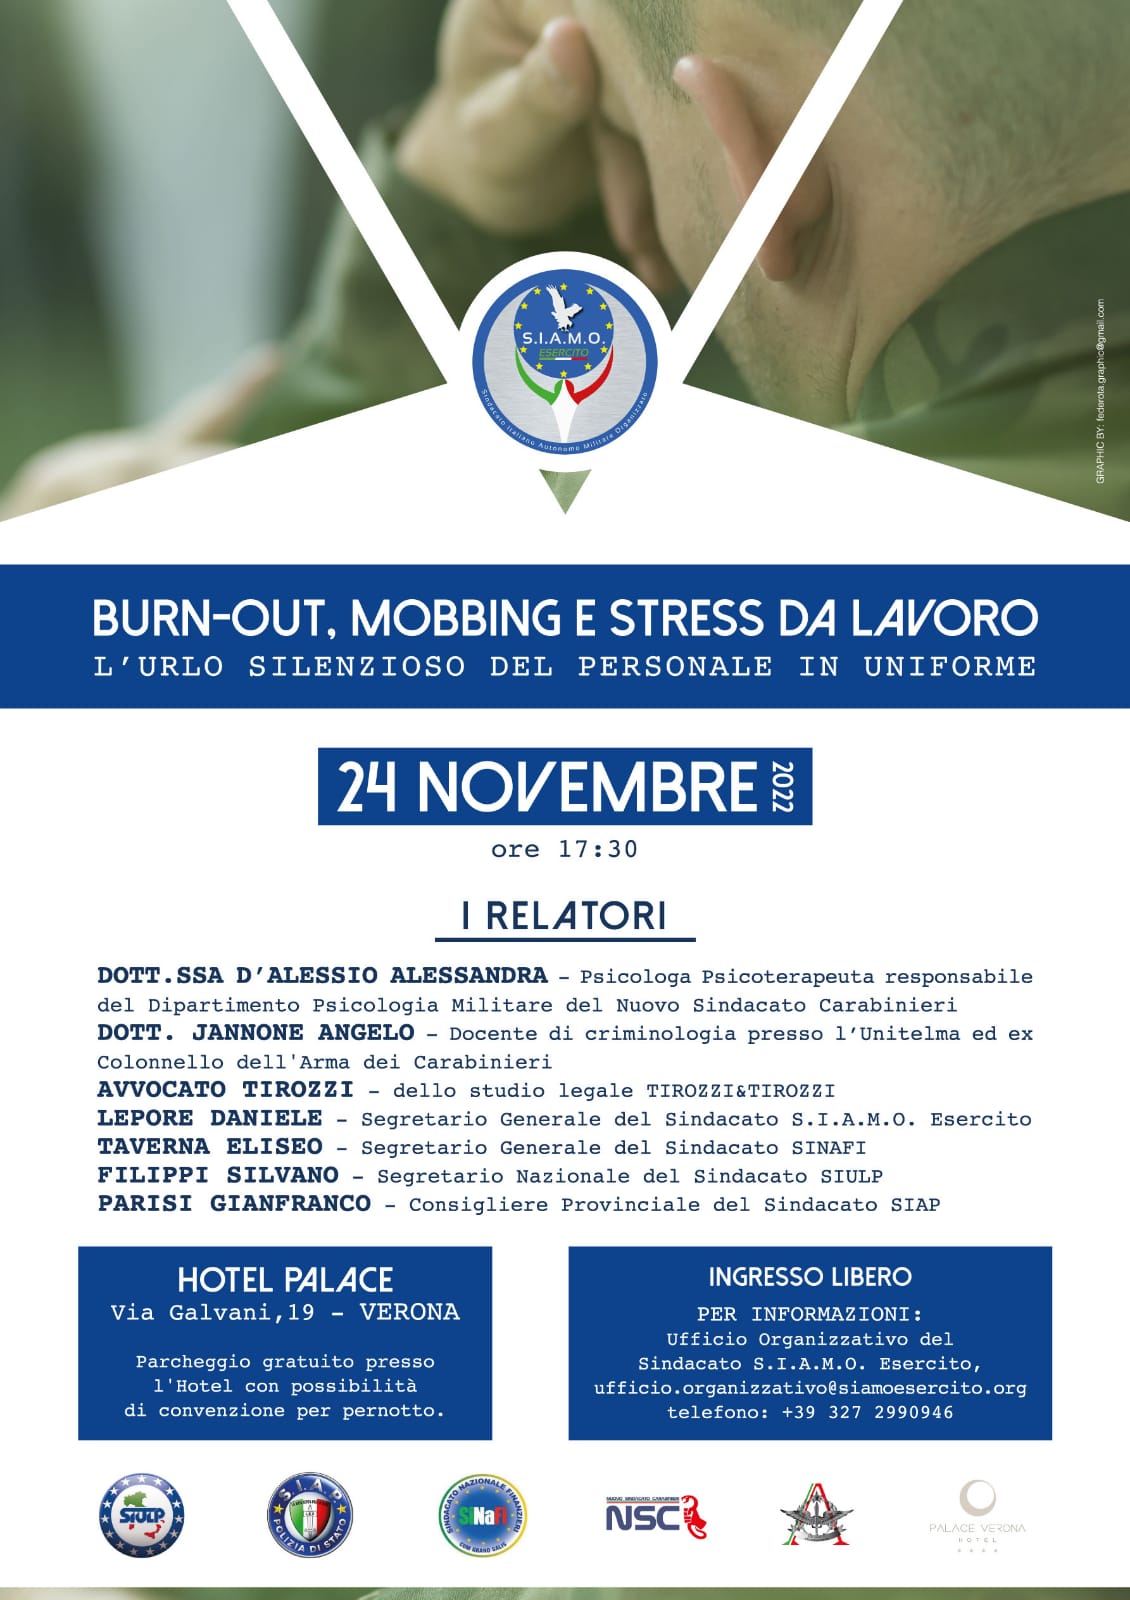 Stress in uniforme, giovedì a Verona convegno nazionale di S.i.a.m.o Esercito